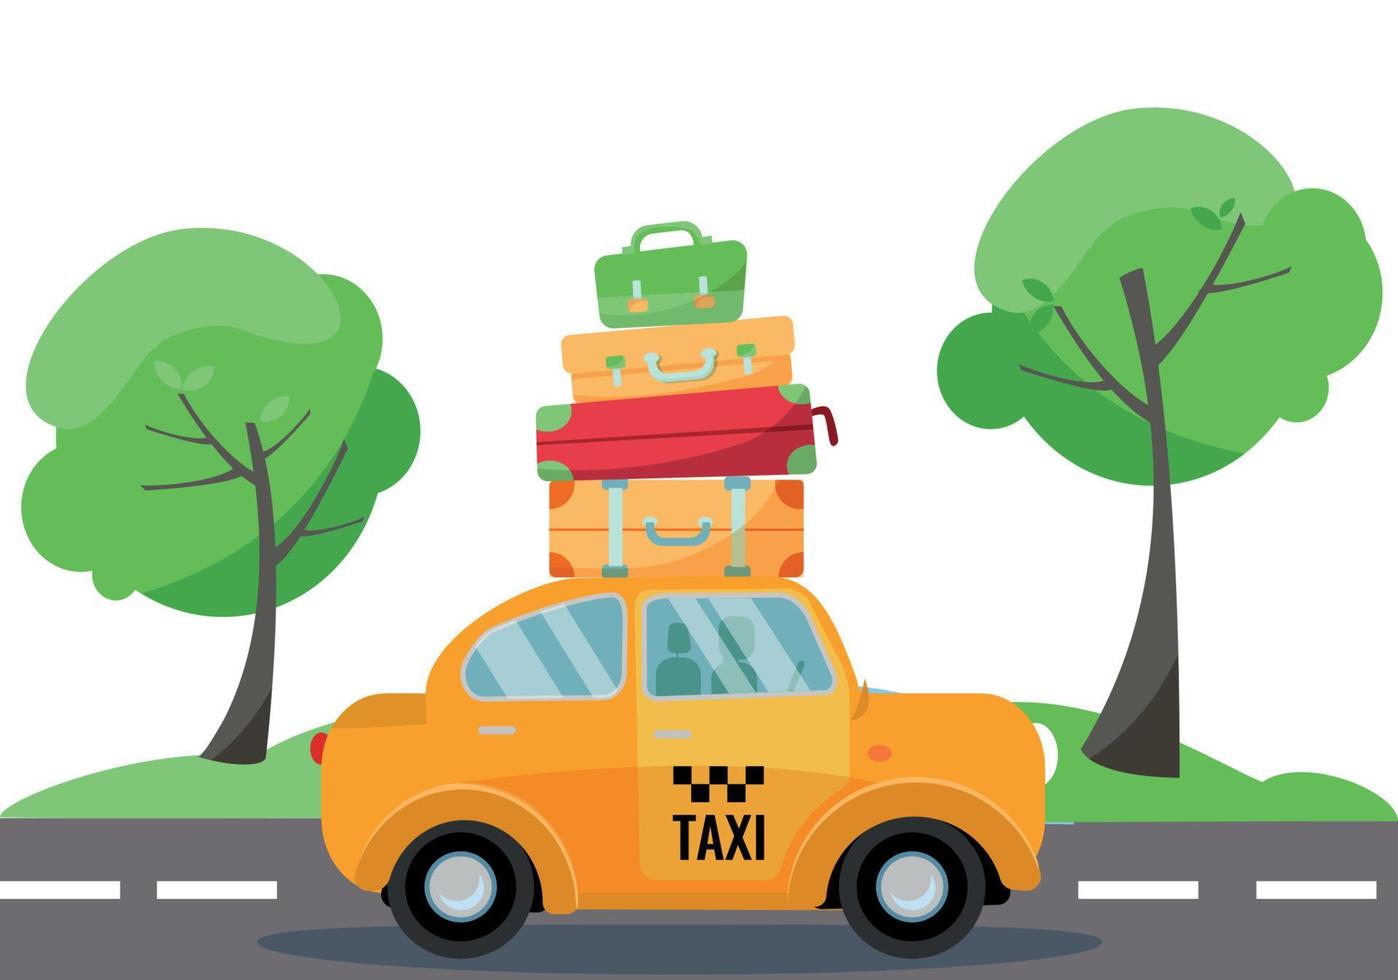 voiture de taxi jaune avec une pile de valises et de bagages sur le toit pour conduire sur la route. paysage d'été avec des arbres verts. vue latérale du véhicule. illustration de dessin animé plat de vecteur